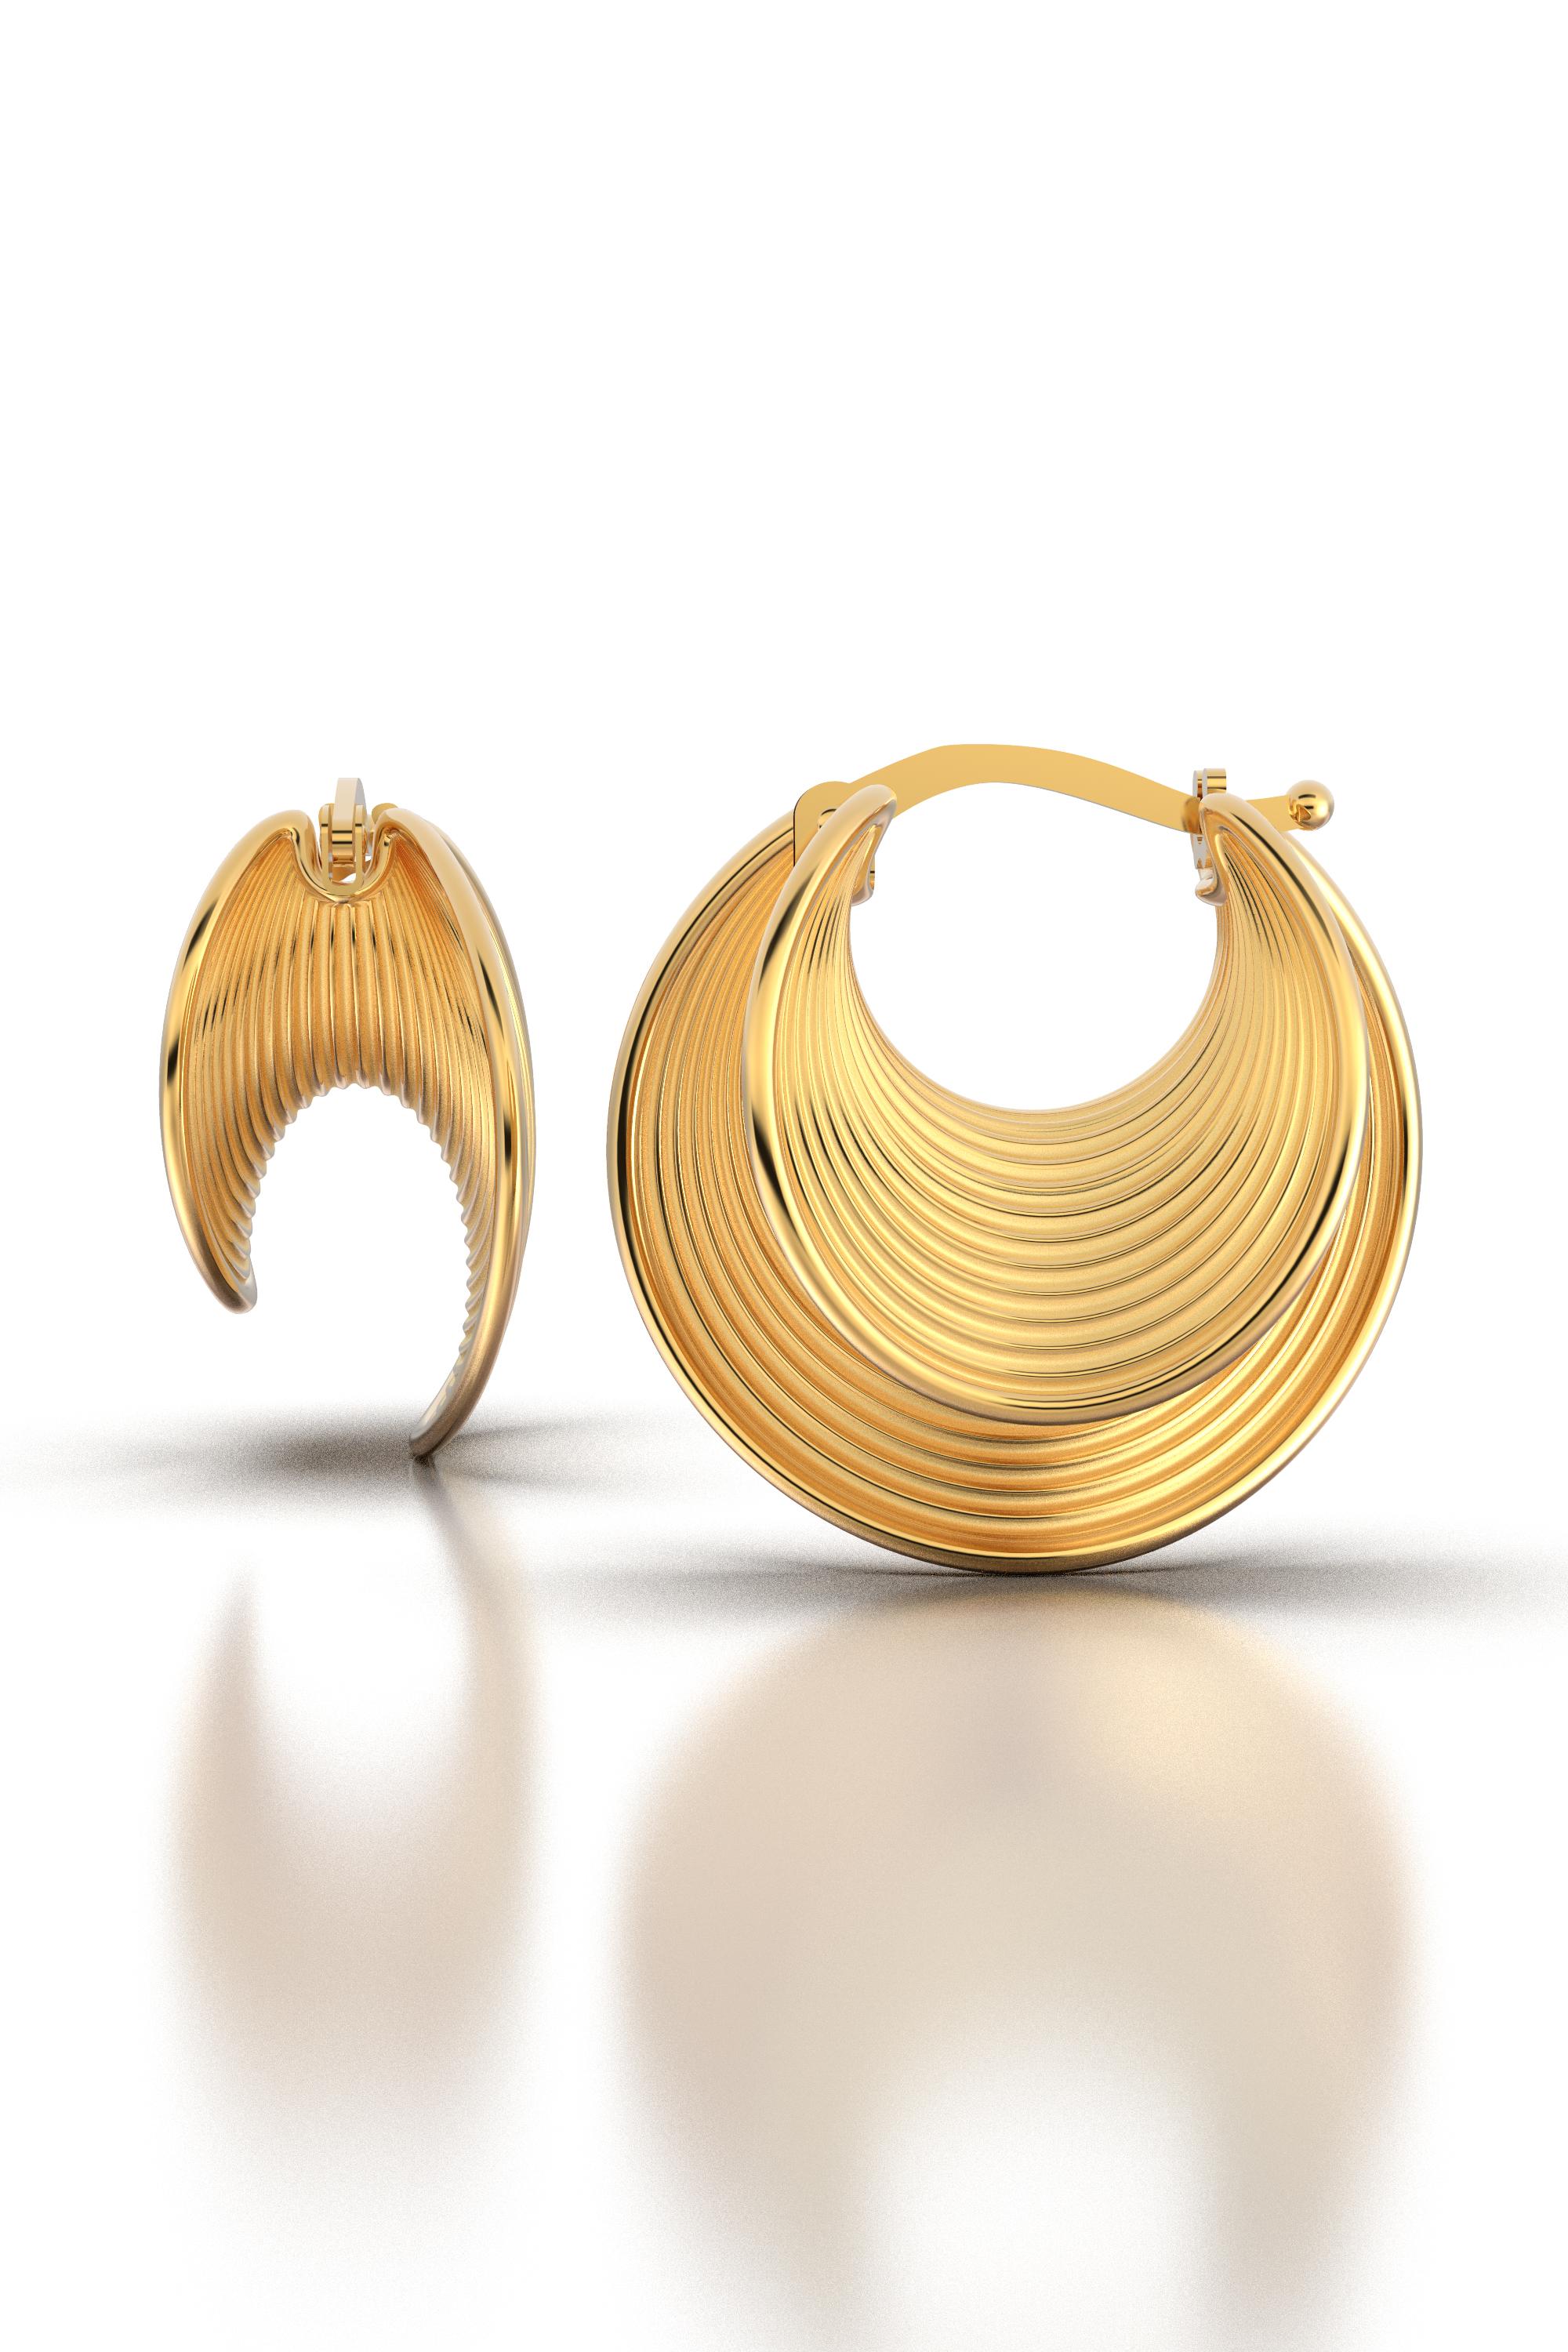 21 mm Durchmesser schöne Ohrringe in poliertem und rohem massivem Gold 18k gefertigt 
Erhältlich in Gelbgold, Roségold und Weißgold, 18k oder 14k auf Anfrage.
Die Ohrringe werden mit einem zuverlässigen Schnappverschluss gesichert.
Das ungefähre